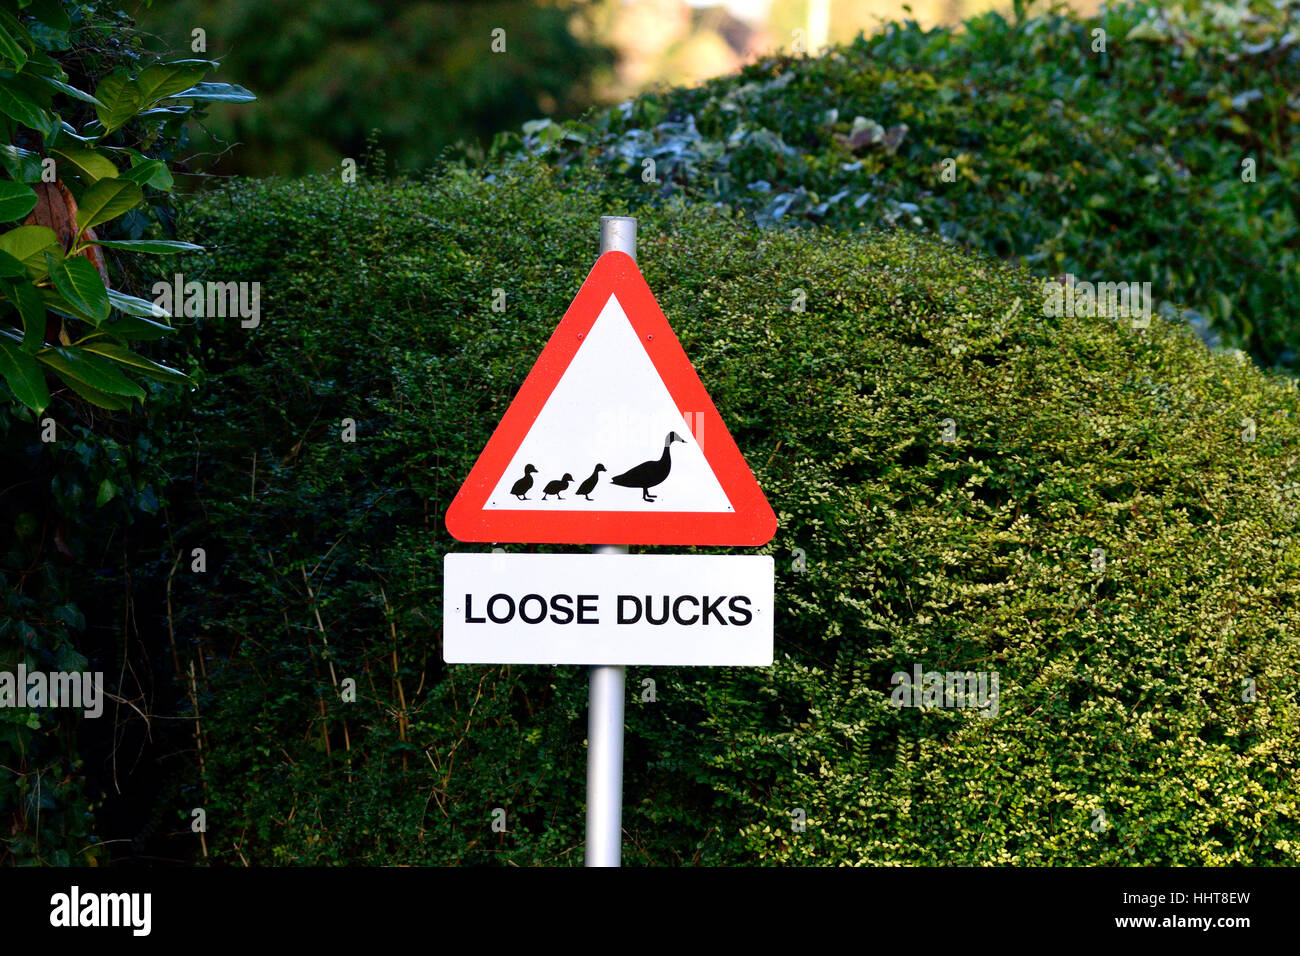 Lose Dorf, Maidstone, Kent, UK. Verkehrszeichen Warnung vor "Lose Enten" ein Wortspiel mit dem Namen des Dorfes (lose) Stockfoto